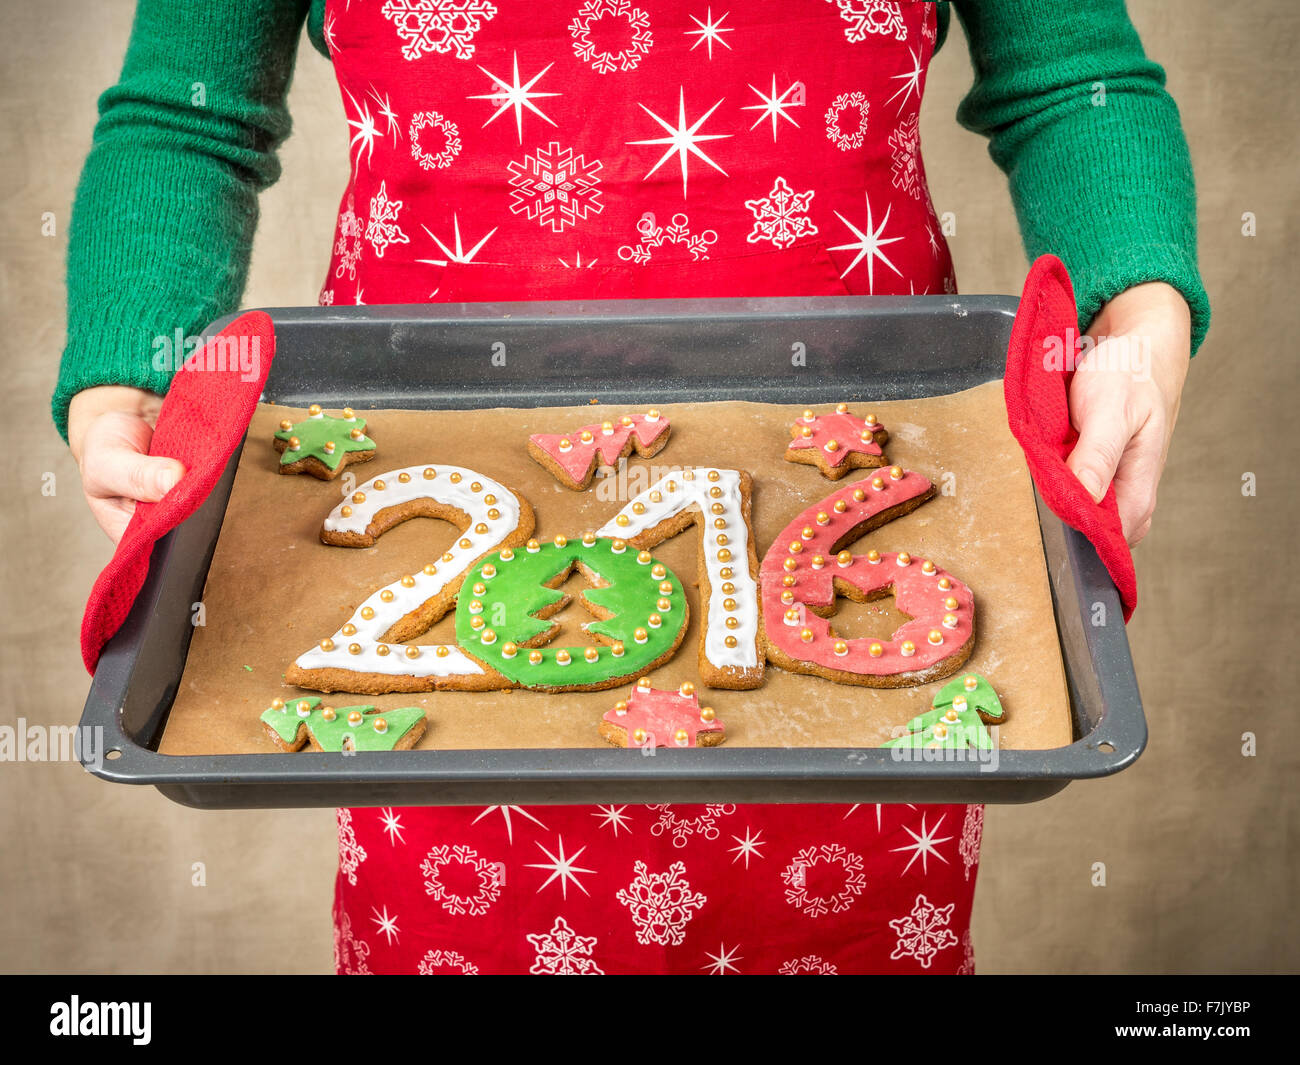 Donna che indossa il grembiule rosso azienda fatti in casa a base di pan di zenzero i cookie in forma di 2016 Anno Nuovo cifre sul vassoio da forno Foto Stock